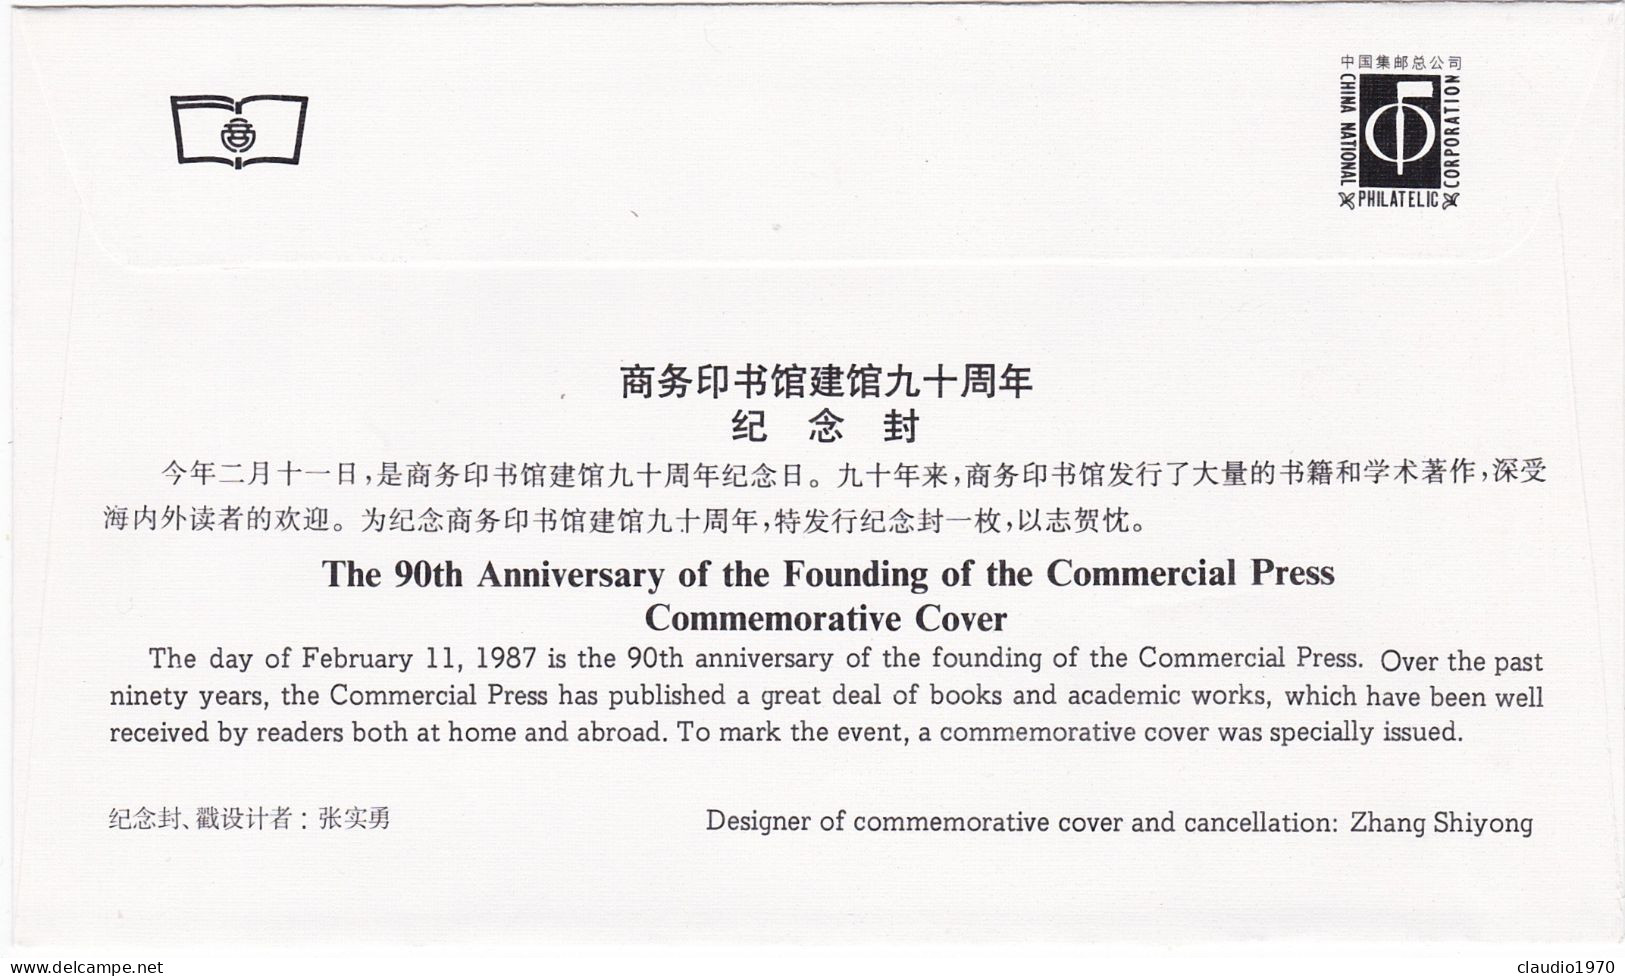 HONG KONG - FDC -  BUSTA  PRIMO GIORNO  - 1987 - FDC